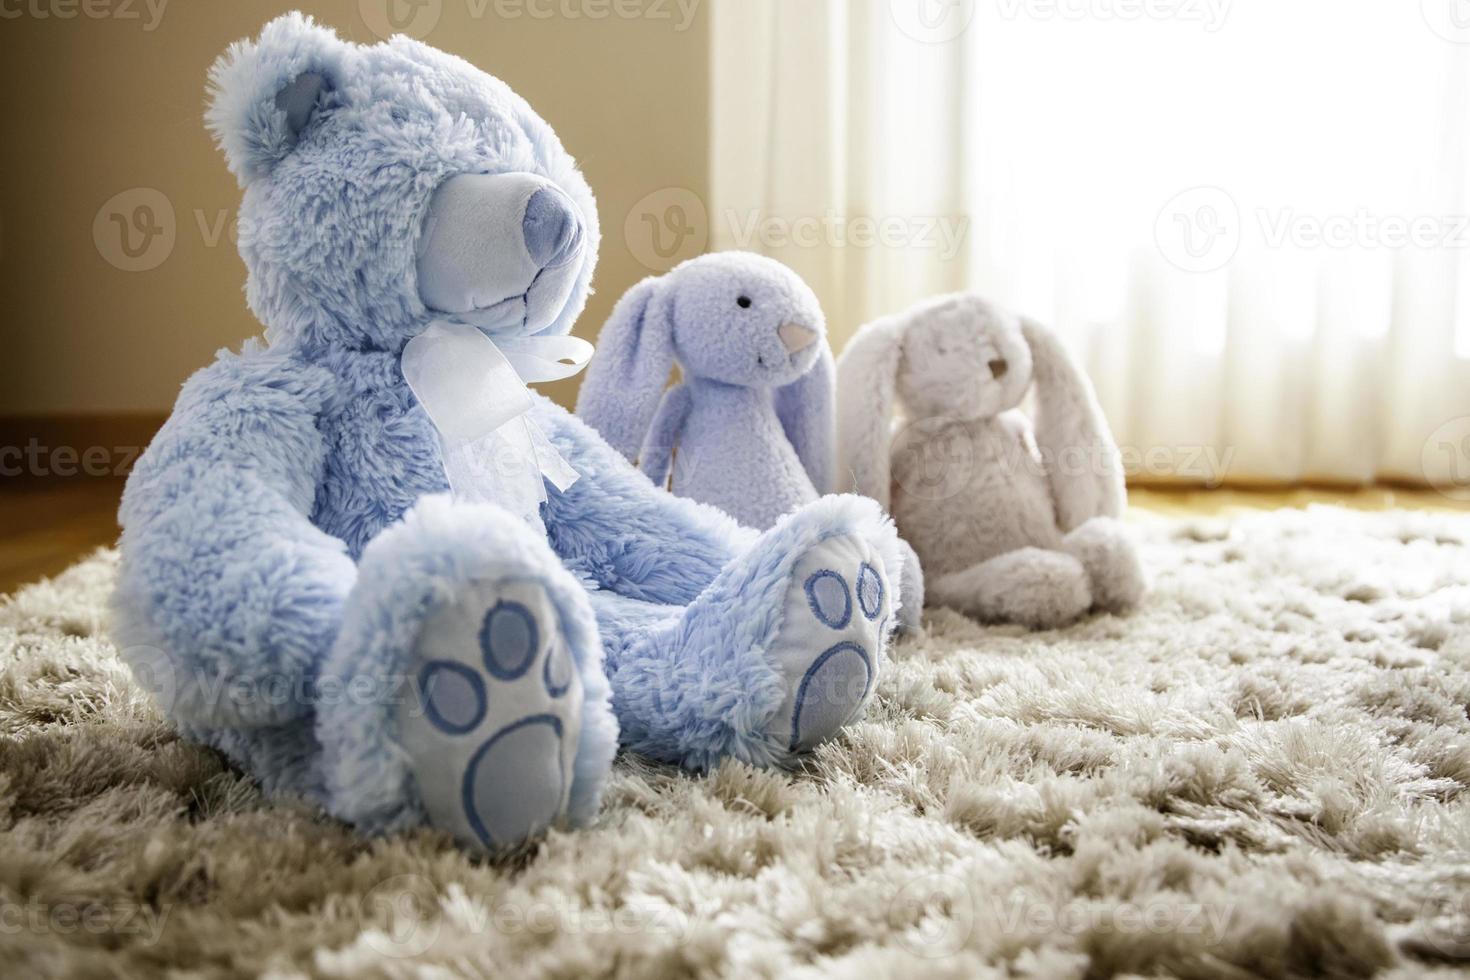 Teddy bears toy photo